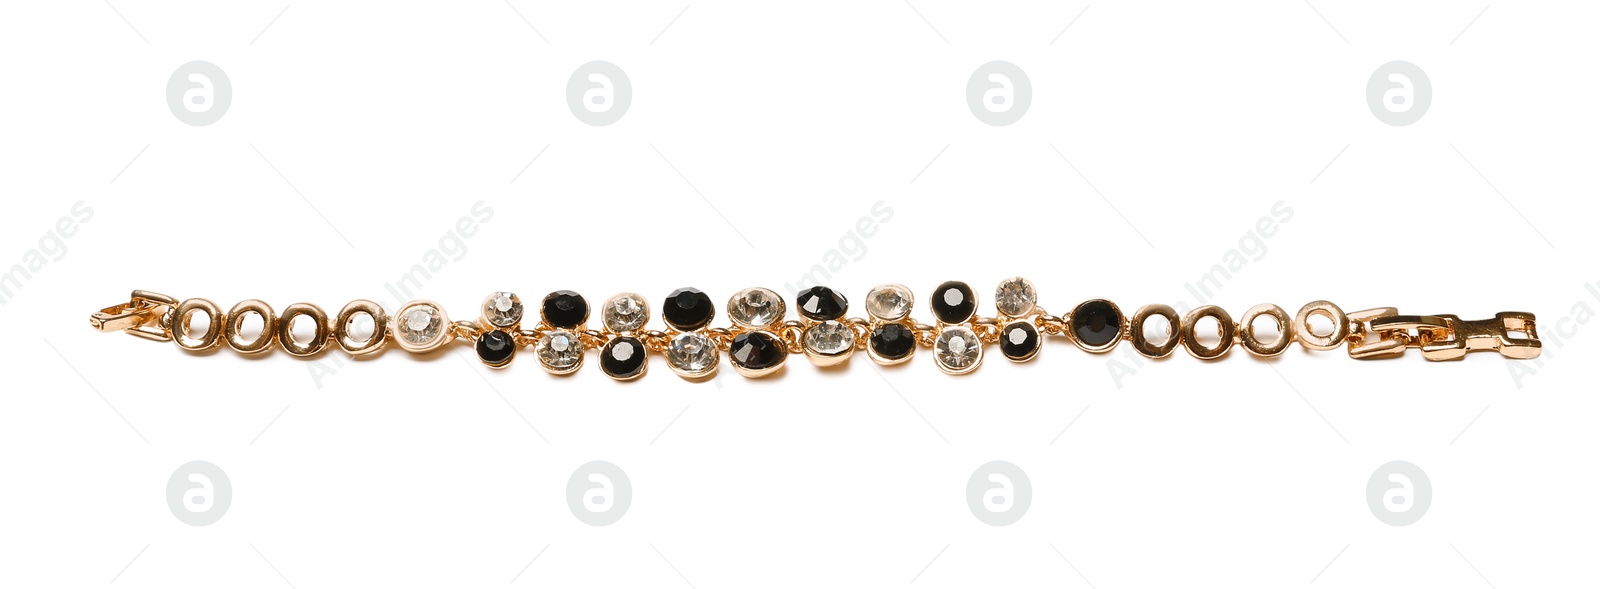 Photo of Stylish bracelet with gemstones isolated on white. Luxury jewelry